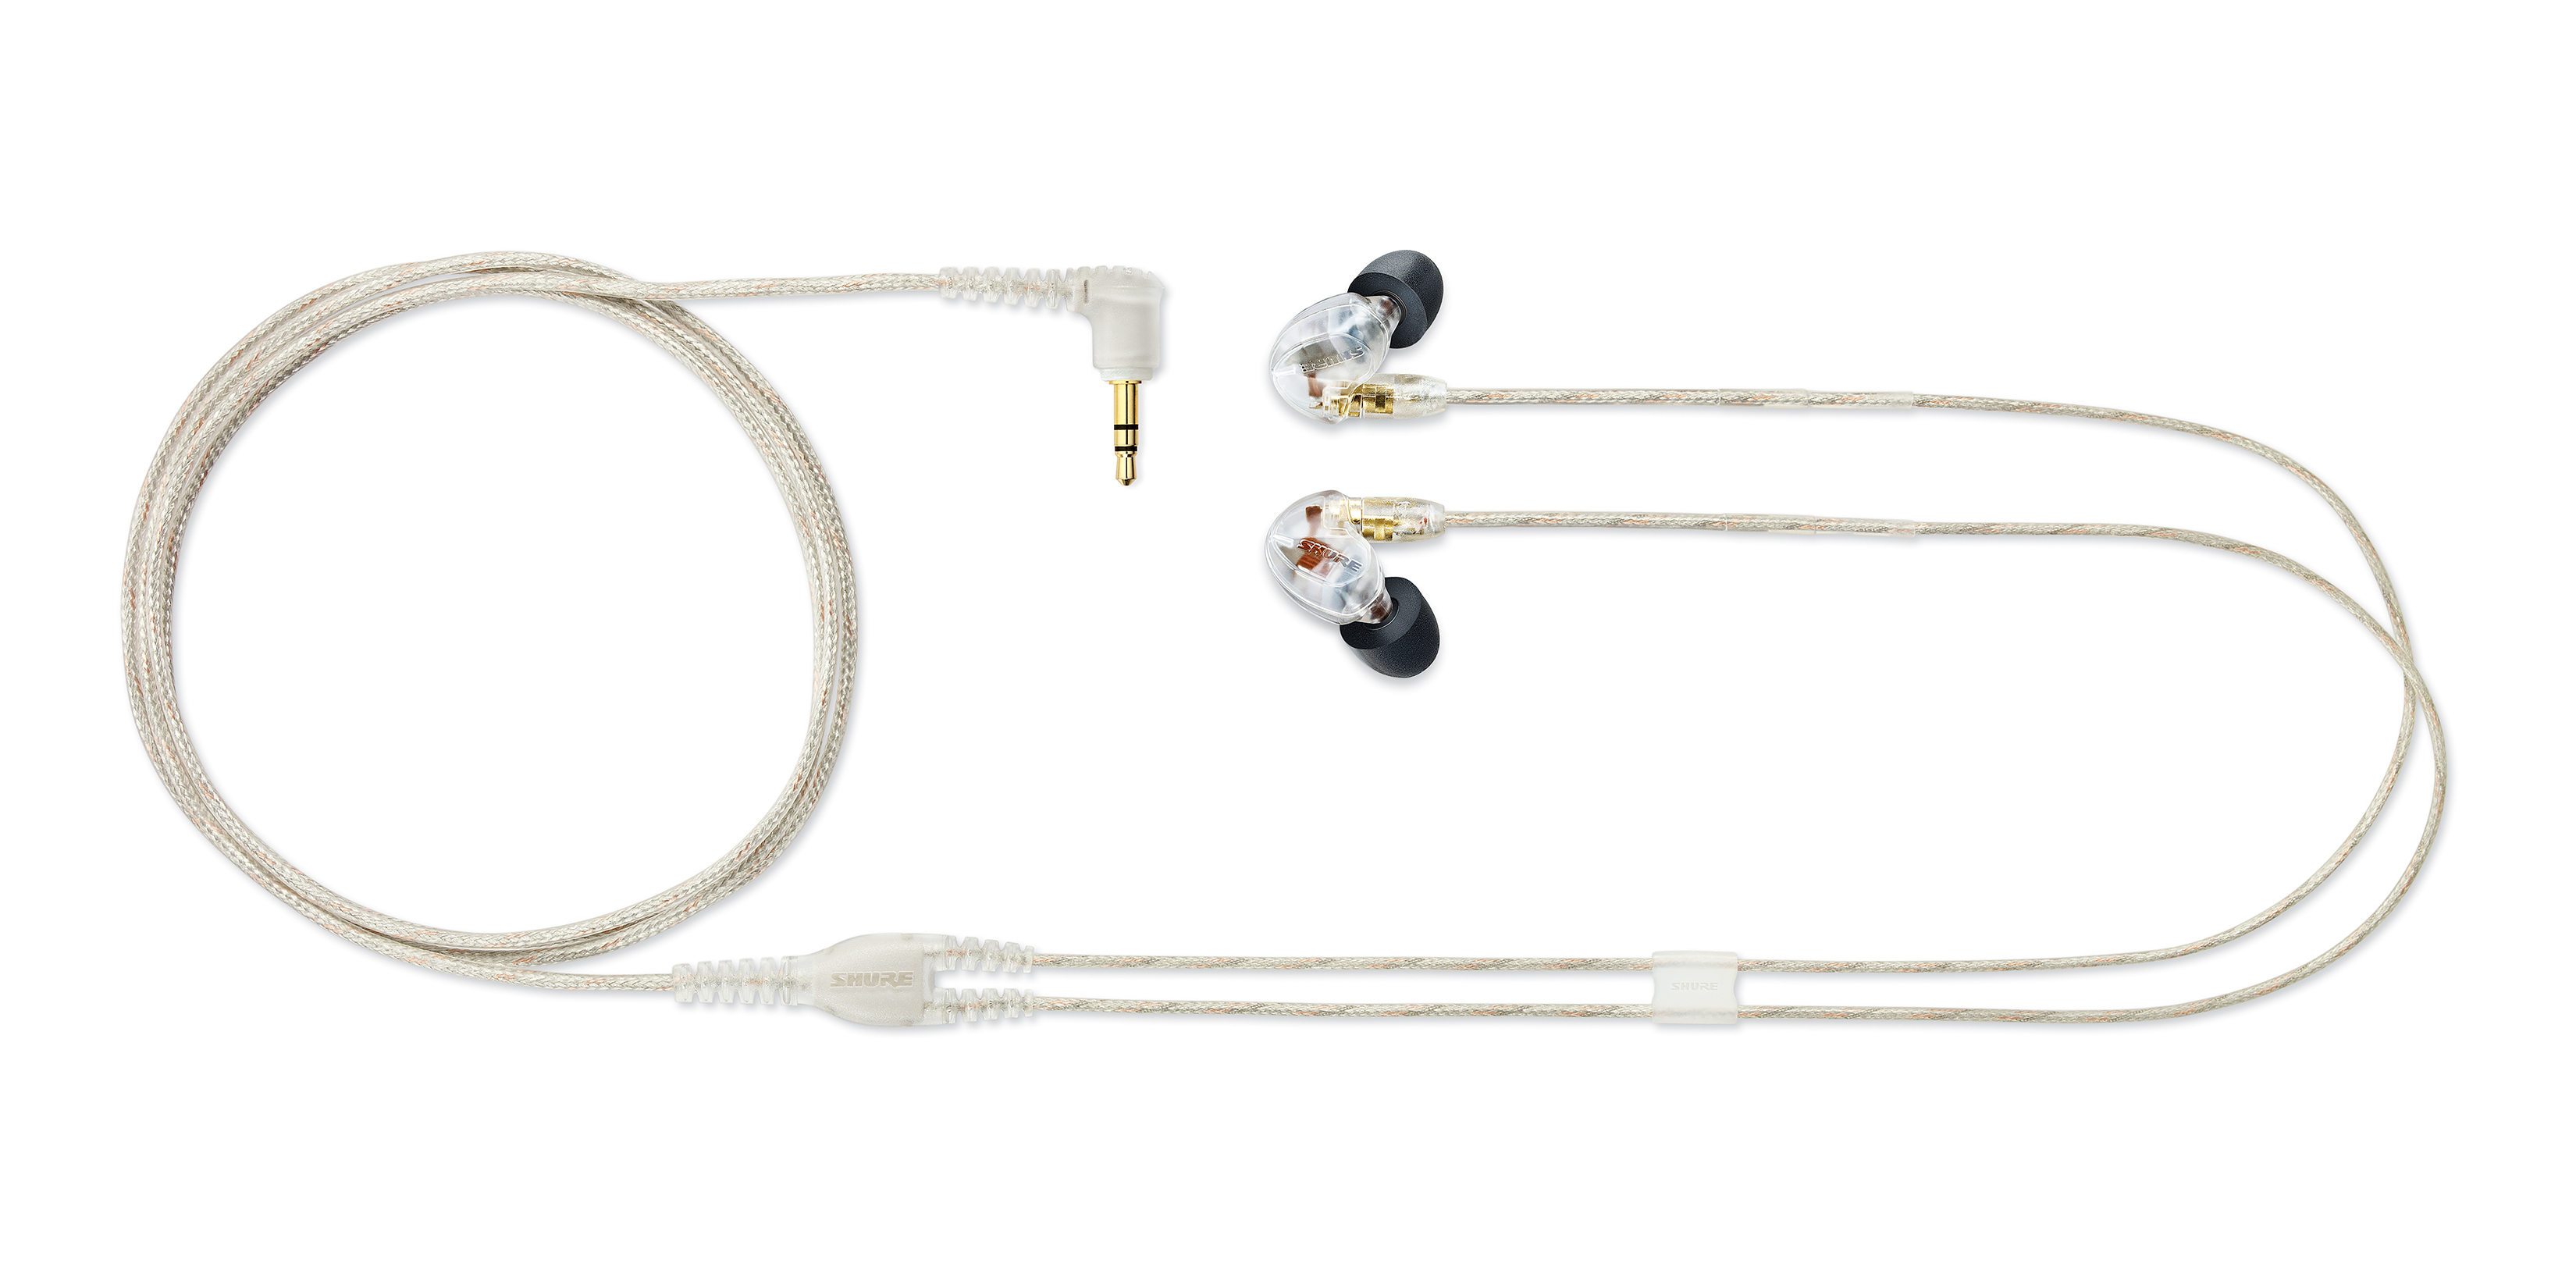 Проводные наушники Shure SE425-CL-EFS for sony xba a3 a2 h2 h3 se215 se425 se535 se315 se846 niap n3ap earphones mmcx replaceable 4 4mm 2 5mm balance cable